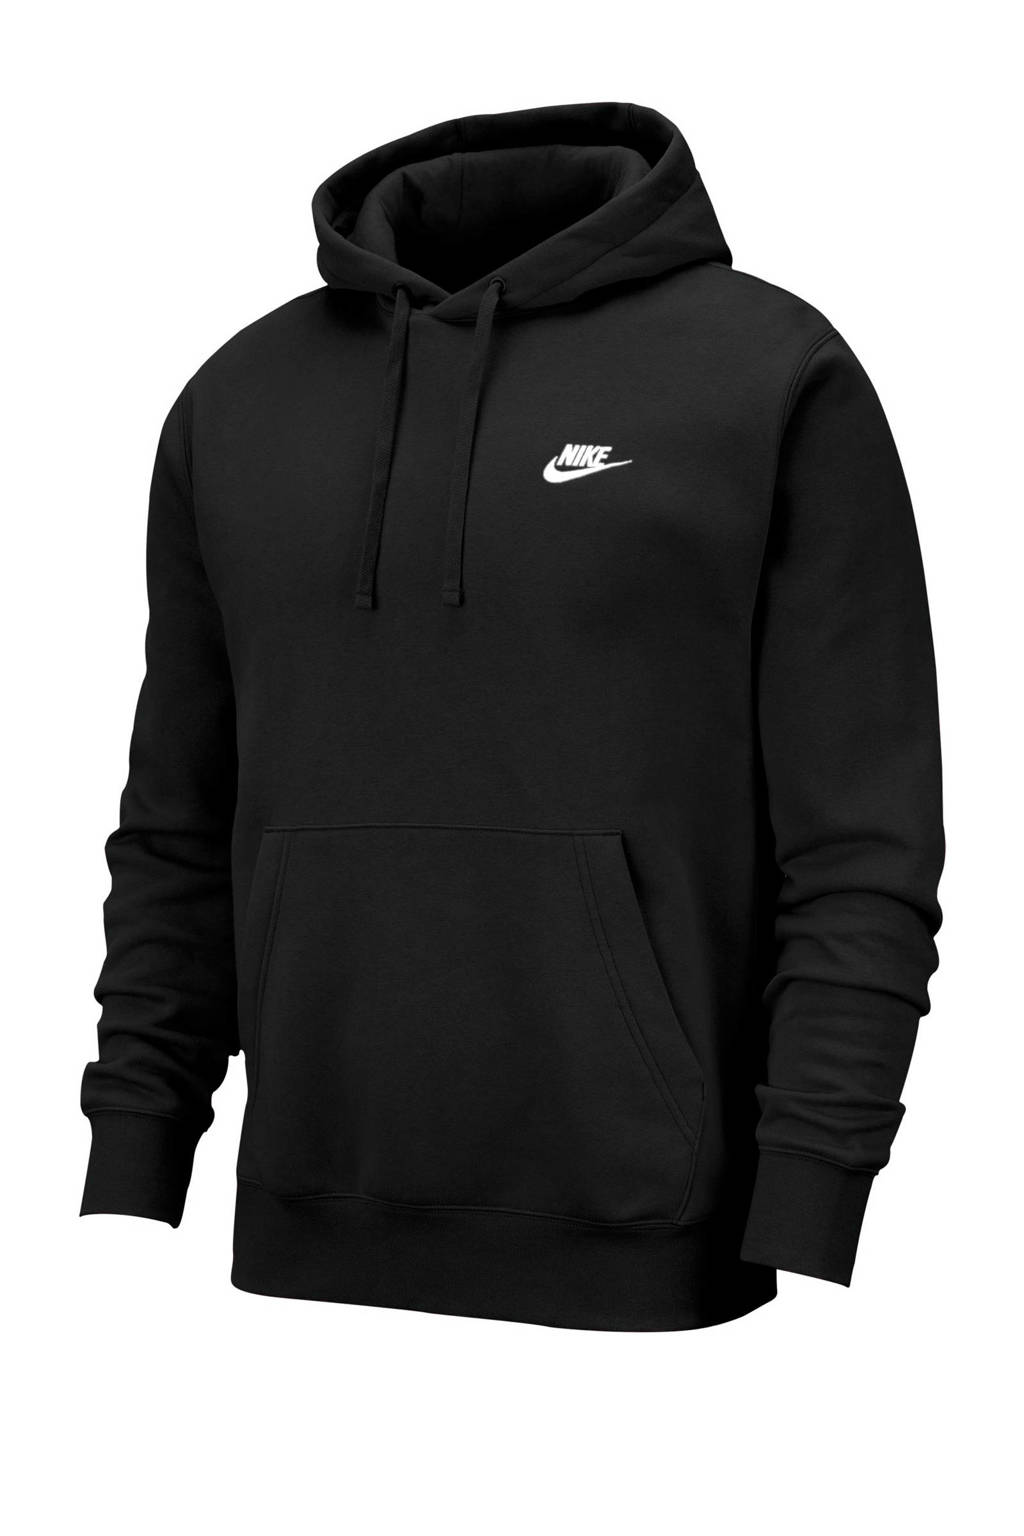 Walging Ironisch Vallen Nike hoodie zwart | wehkamp